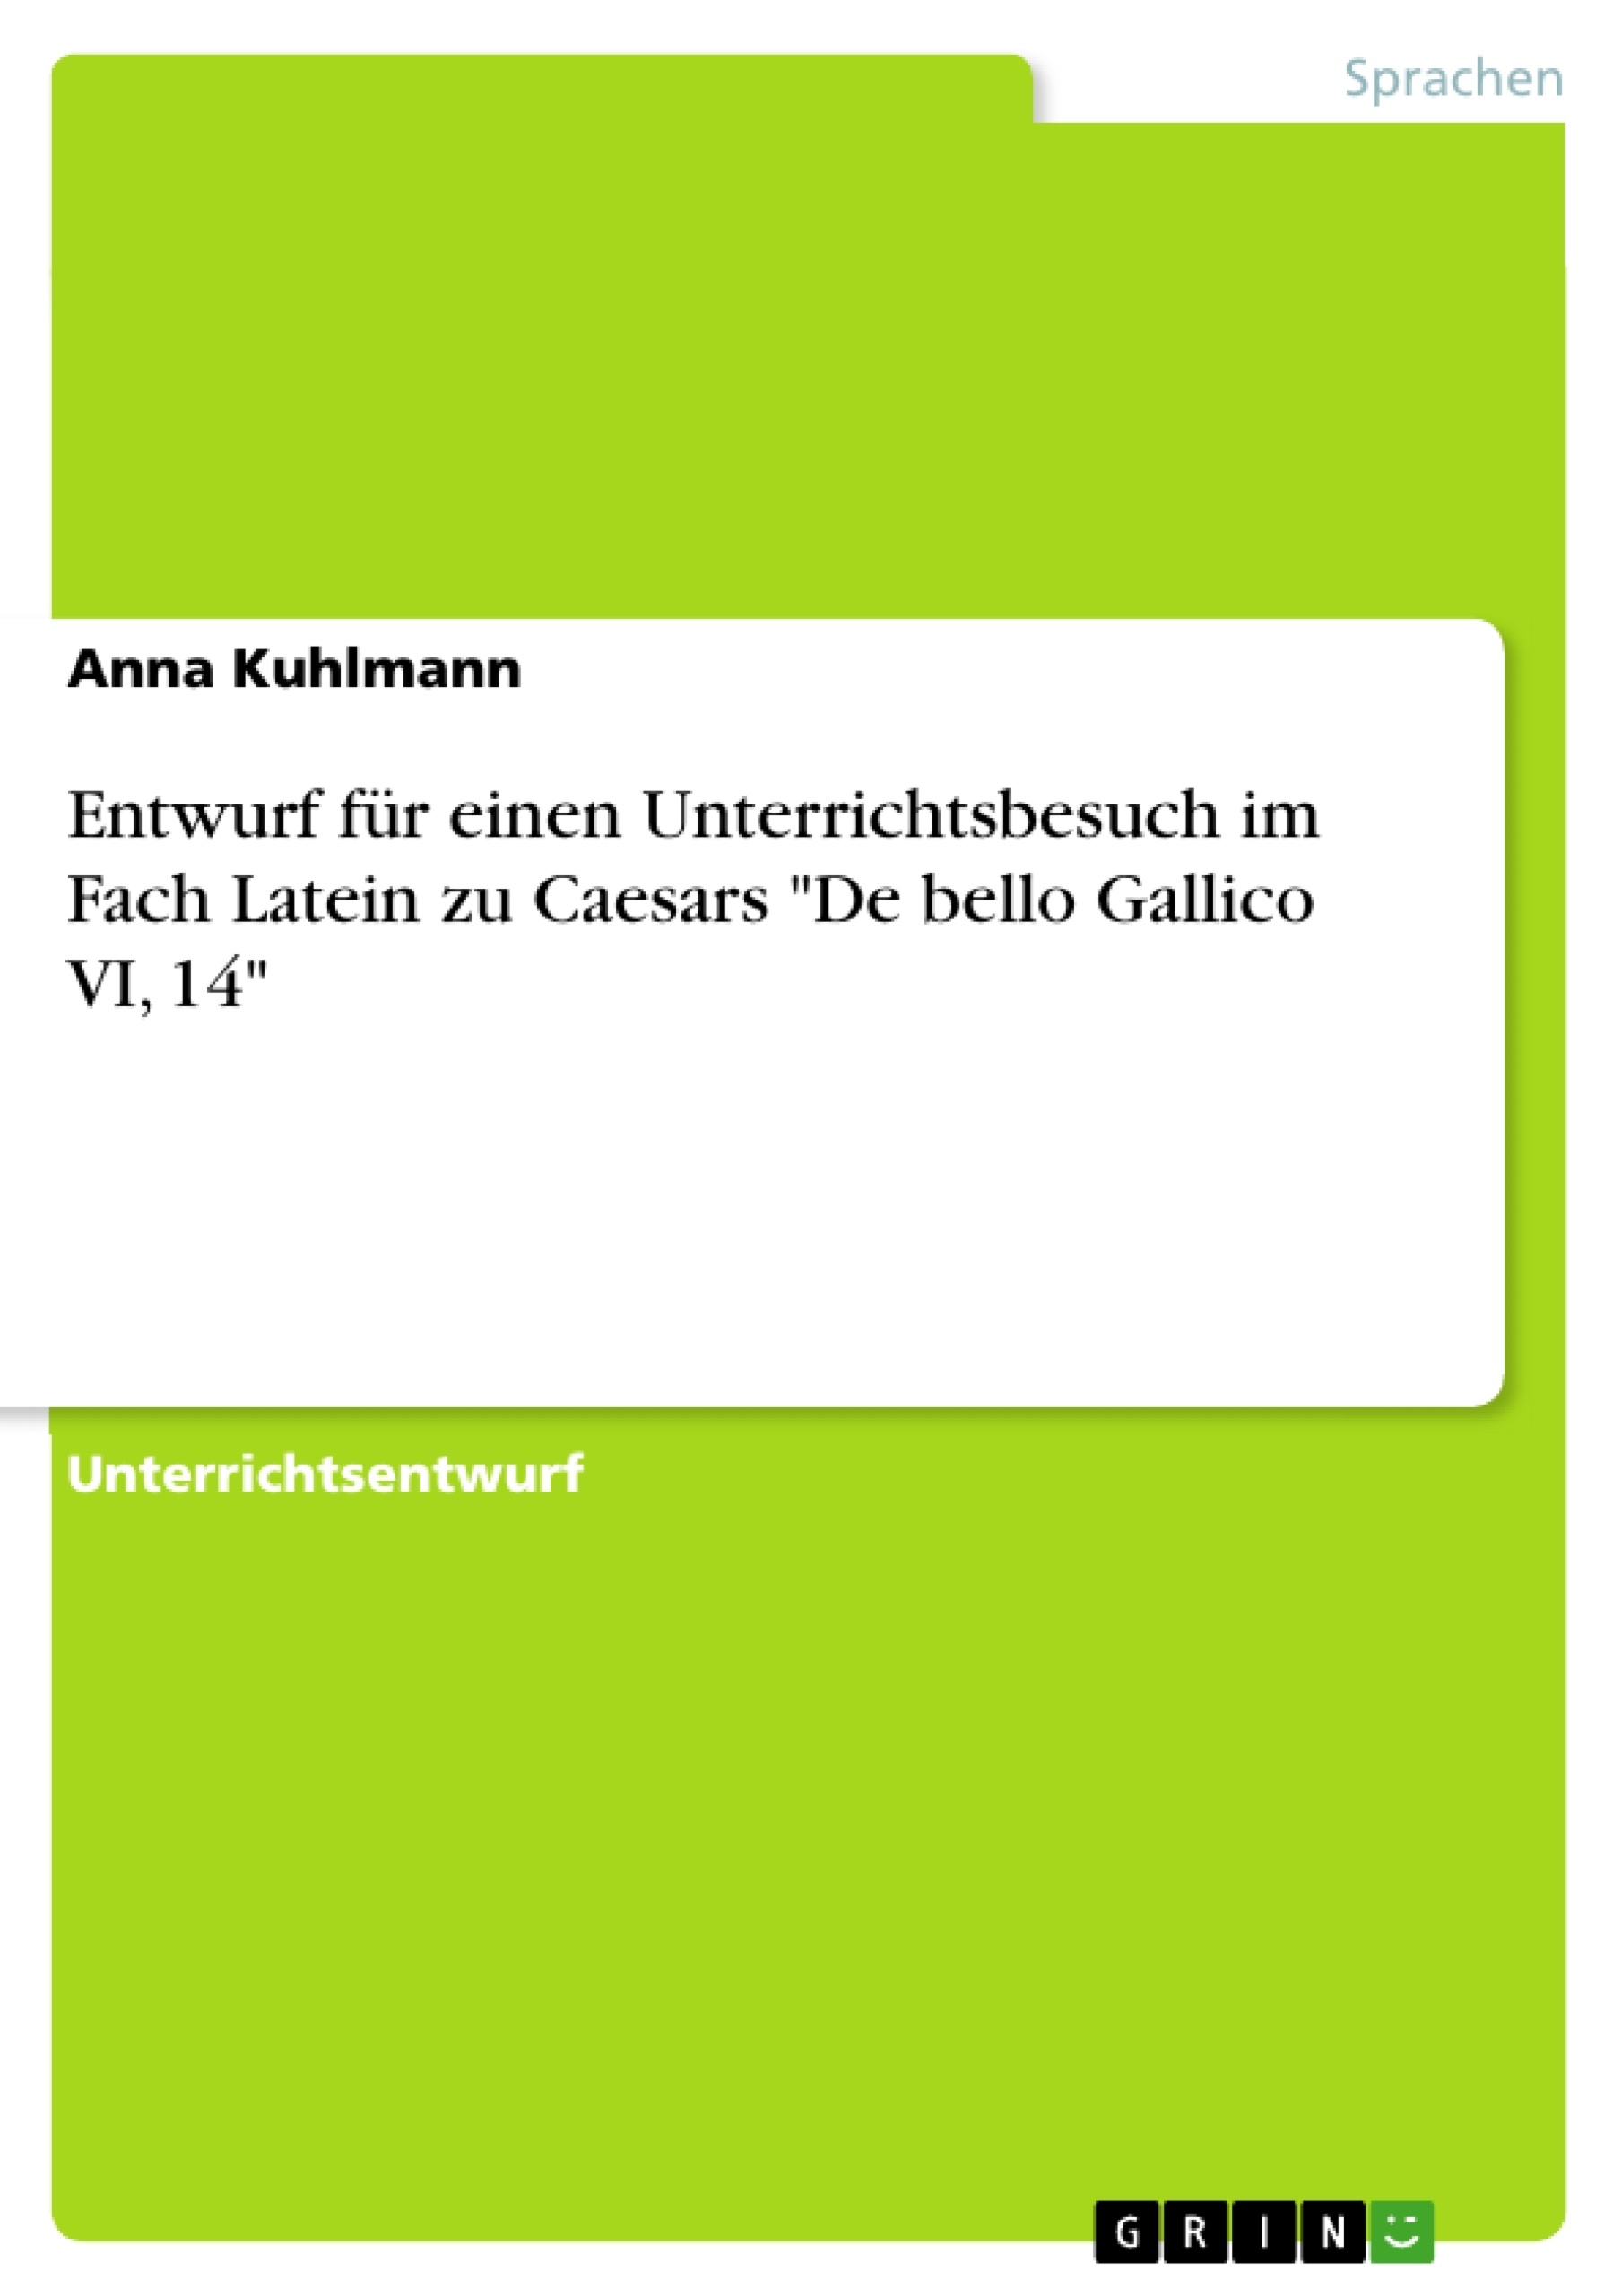 Title: Entwurf für einen Unterrichtsbesuch im Fach Latein zu Caesars "De bello Gallico VI, 14"